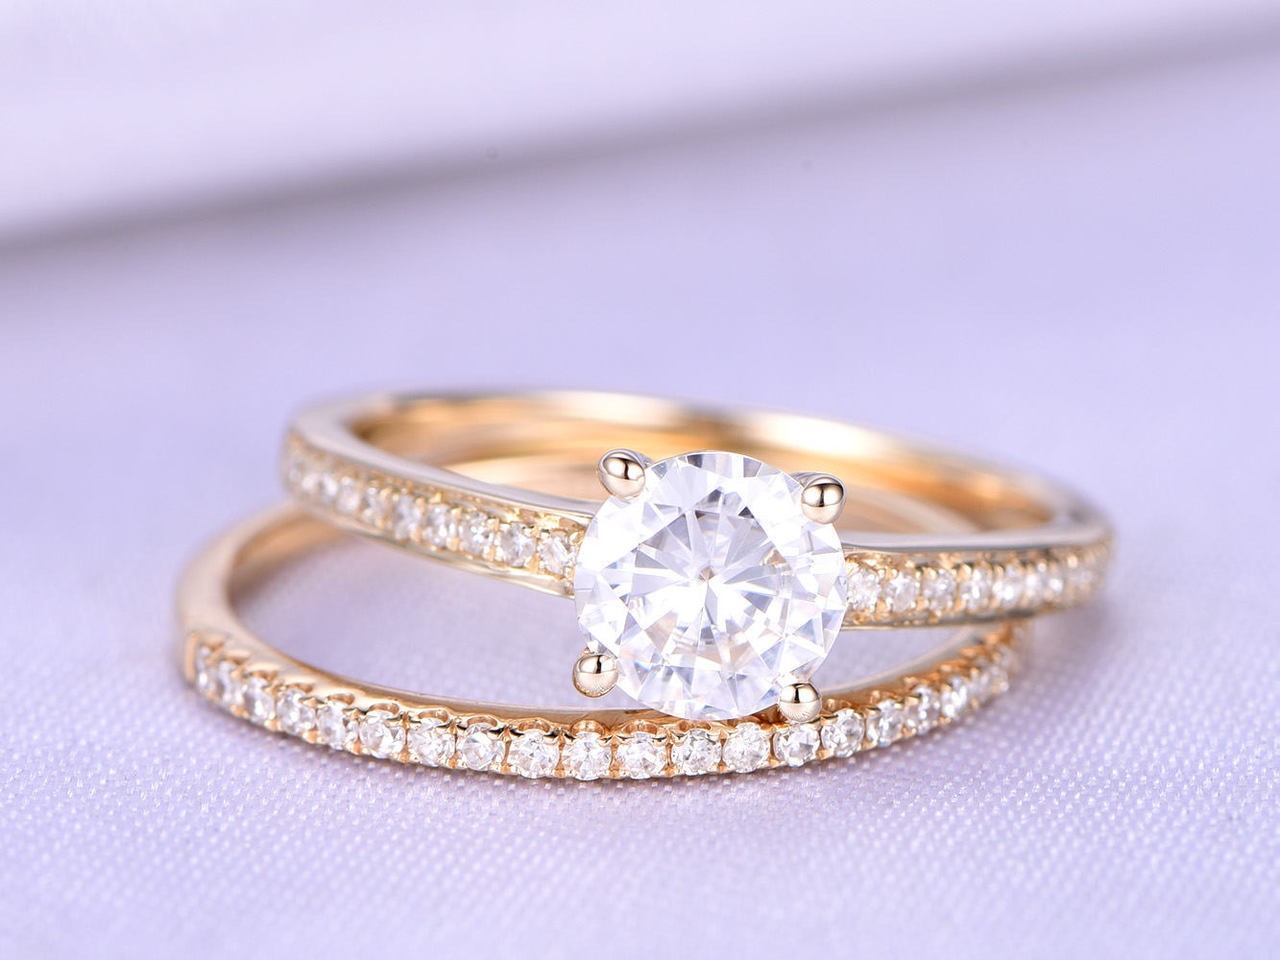 Jenis Setting untuk Cincin Pertunangan | Passion Jewelry